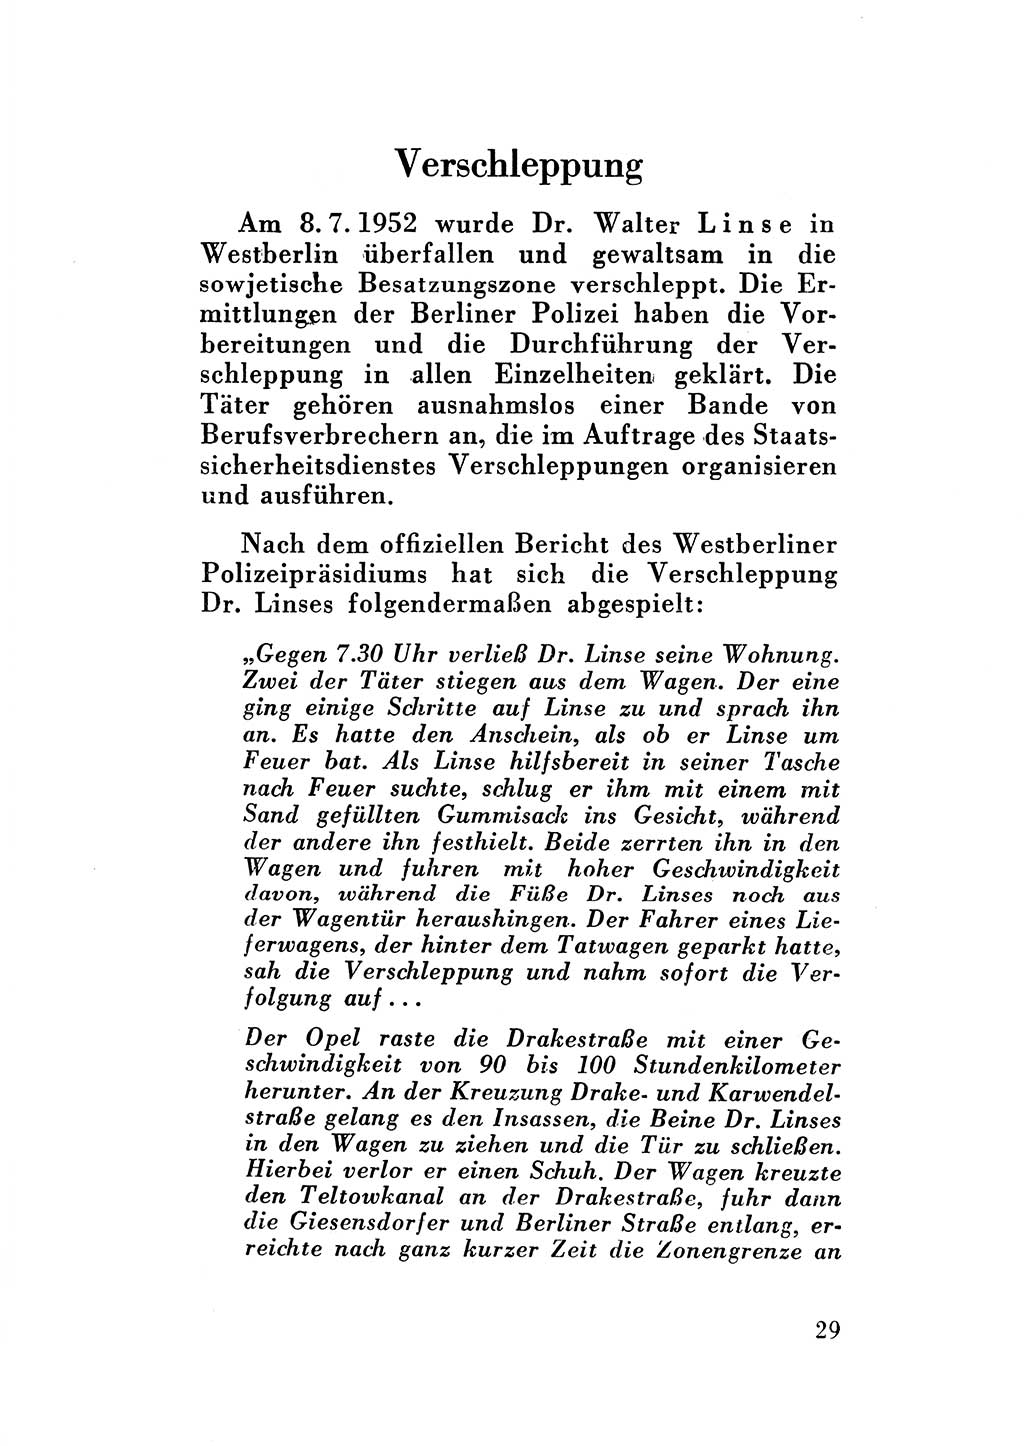 Katalog des Unrechts, Untersuchungsausschuß Freiheitlicher Juristen (UfJ) [Bundesrepublik Deutschland (BRD)] 1956, Seite 29 (Kat. UnR. UfJ BRD 1956, S. 29)